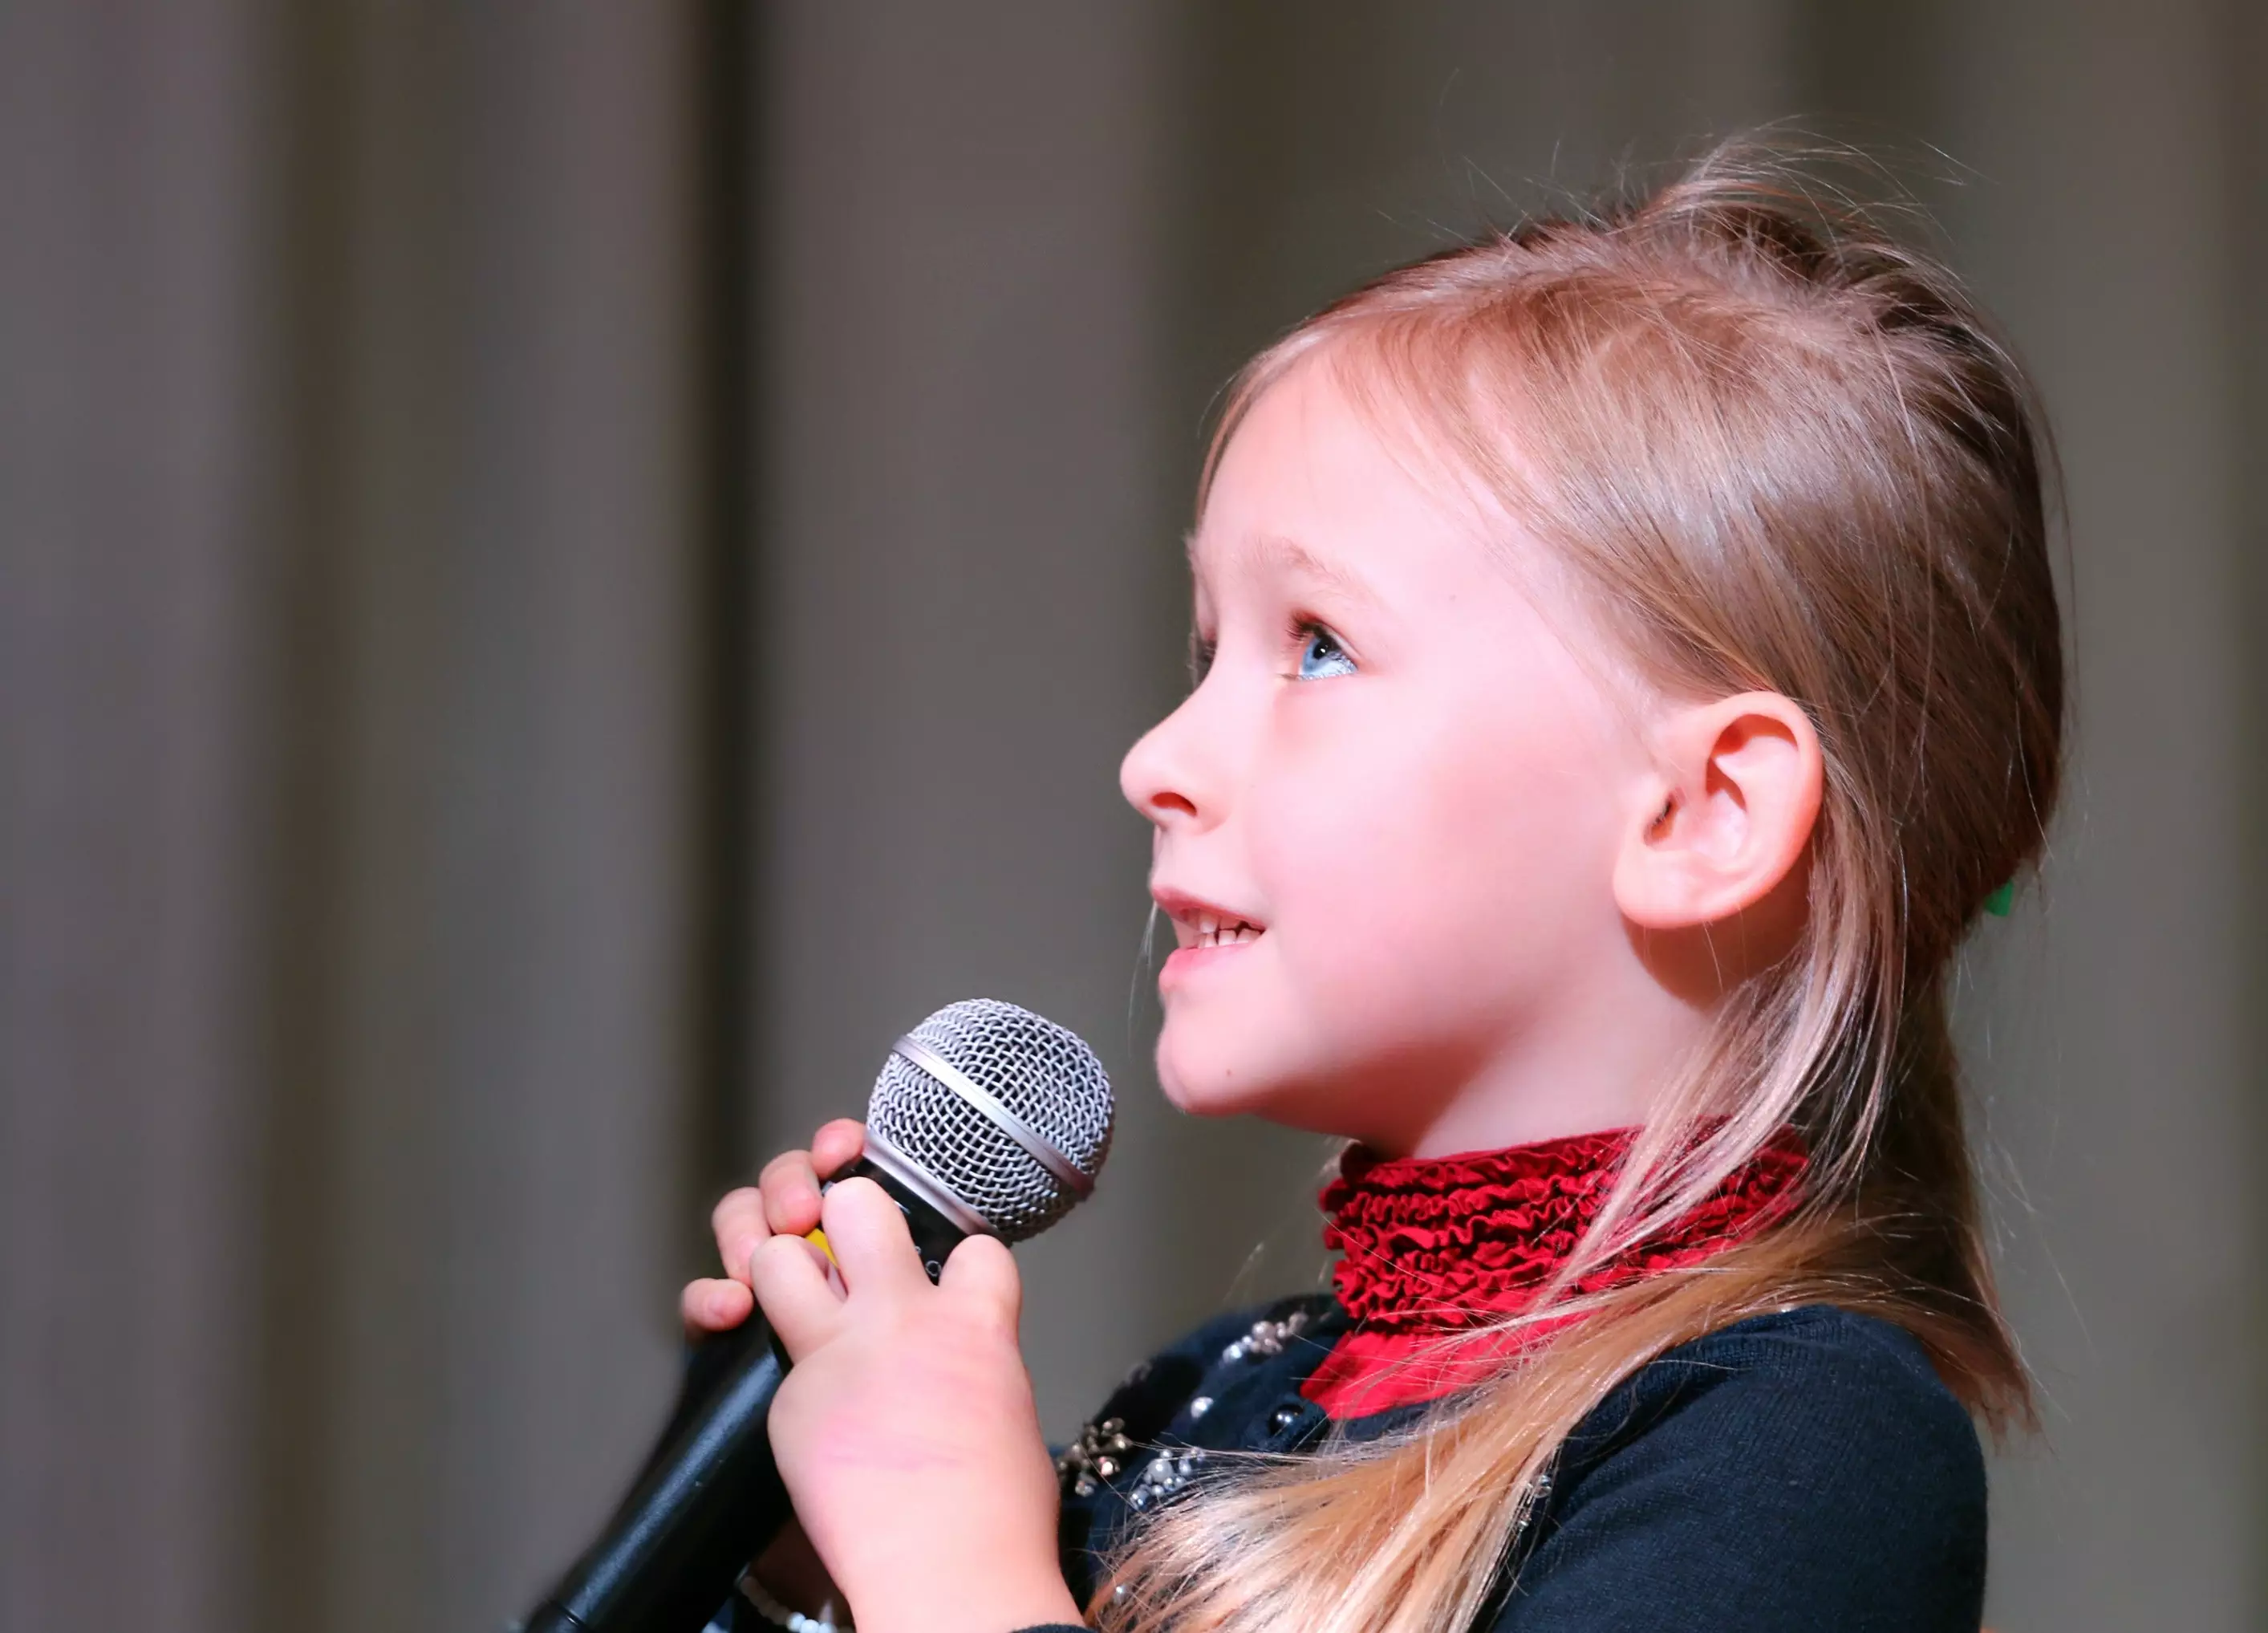 Как научить ребенка петь